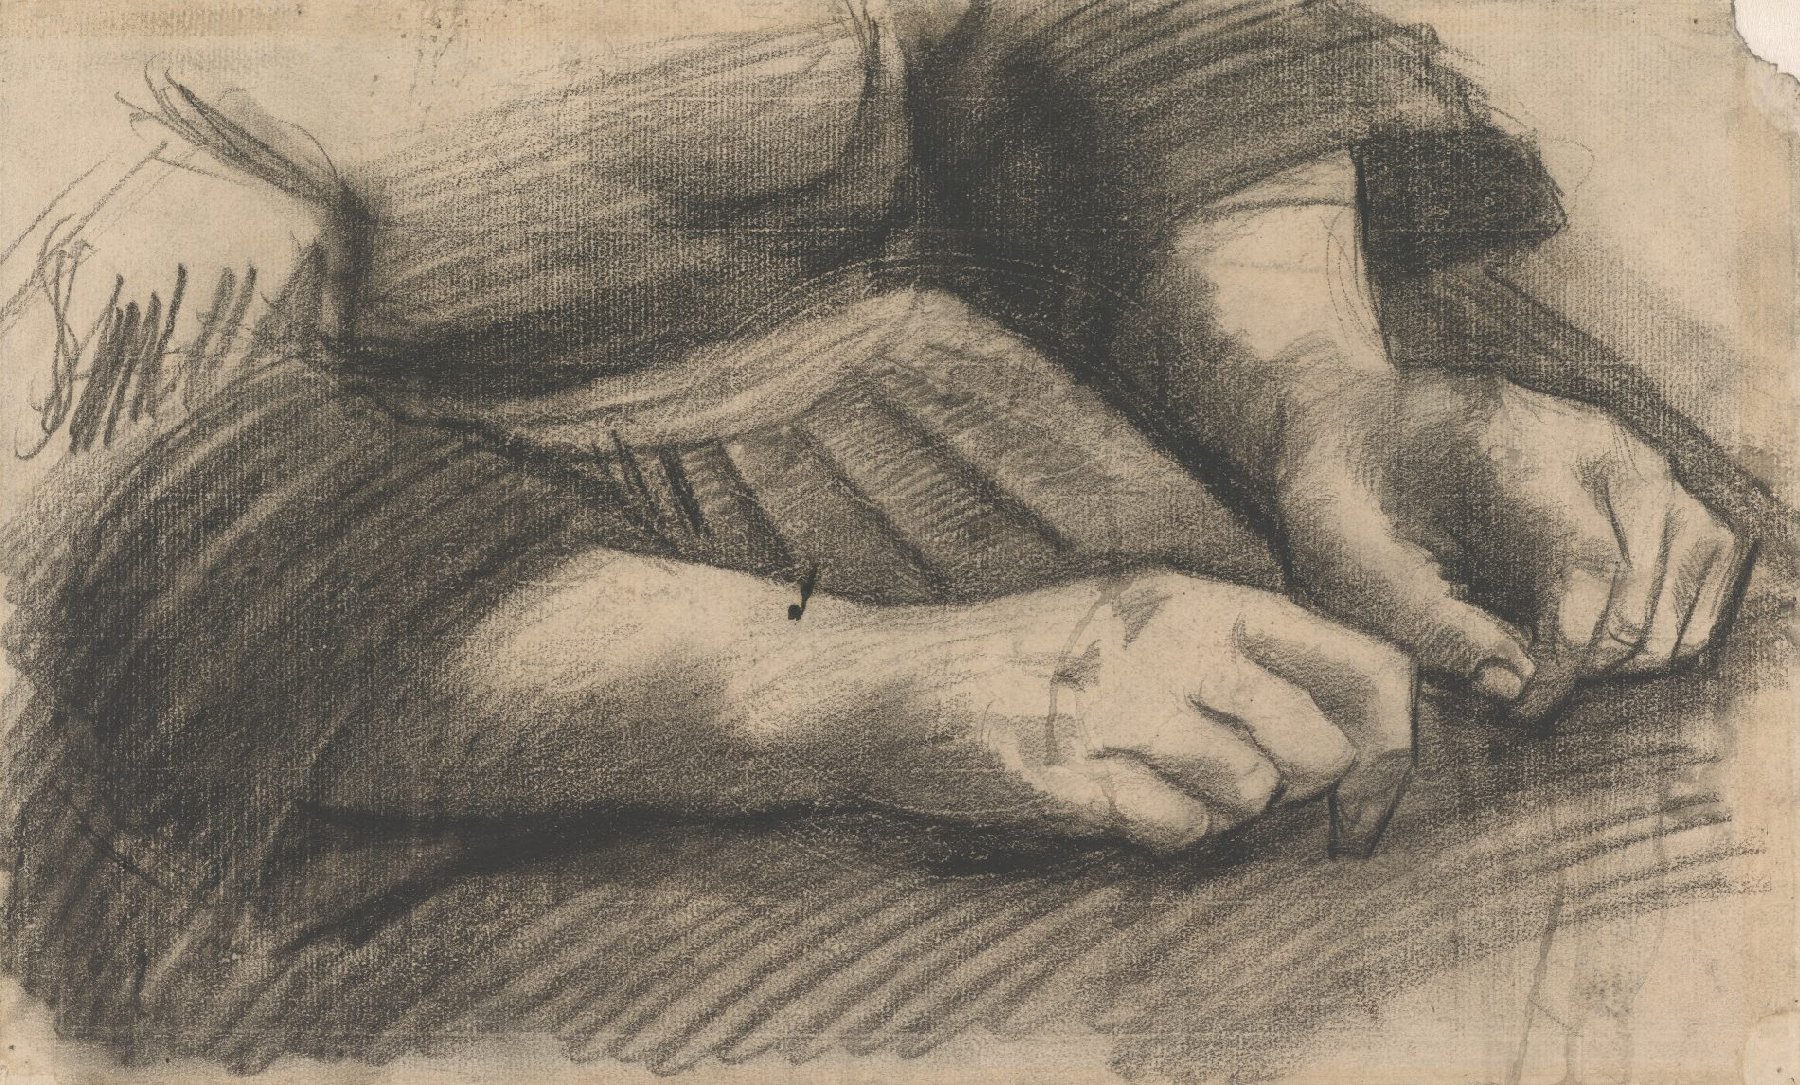 Schoot met handen Vincent van Gogh (1853 - 1890), Nuenen, december 1884-mei 1885